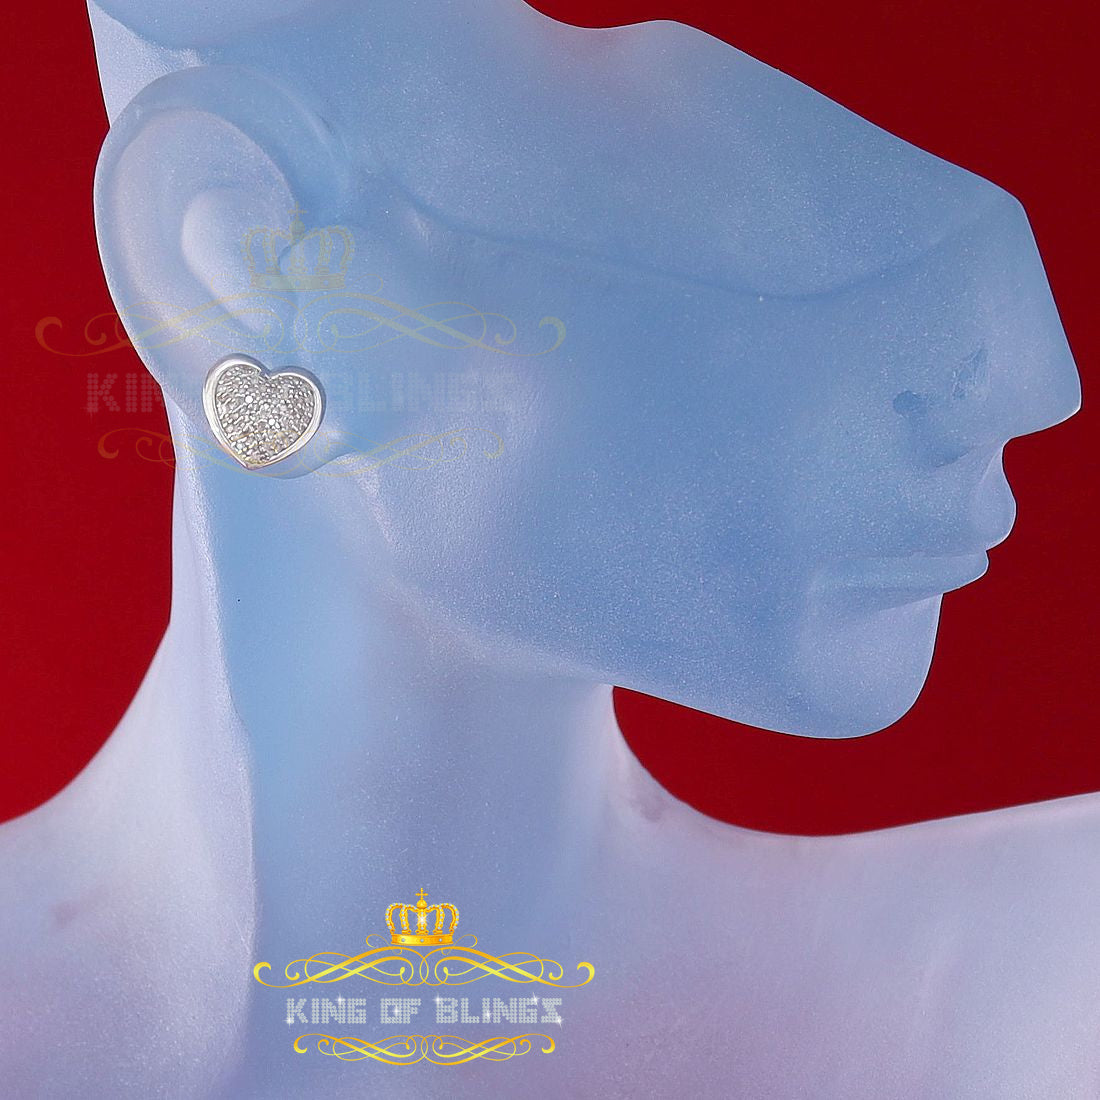 King Of Bling's 0.33ct Micro Pave 925 White Silver Diamond Heart Earring For Men's / Women's KING OF BLINGS